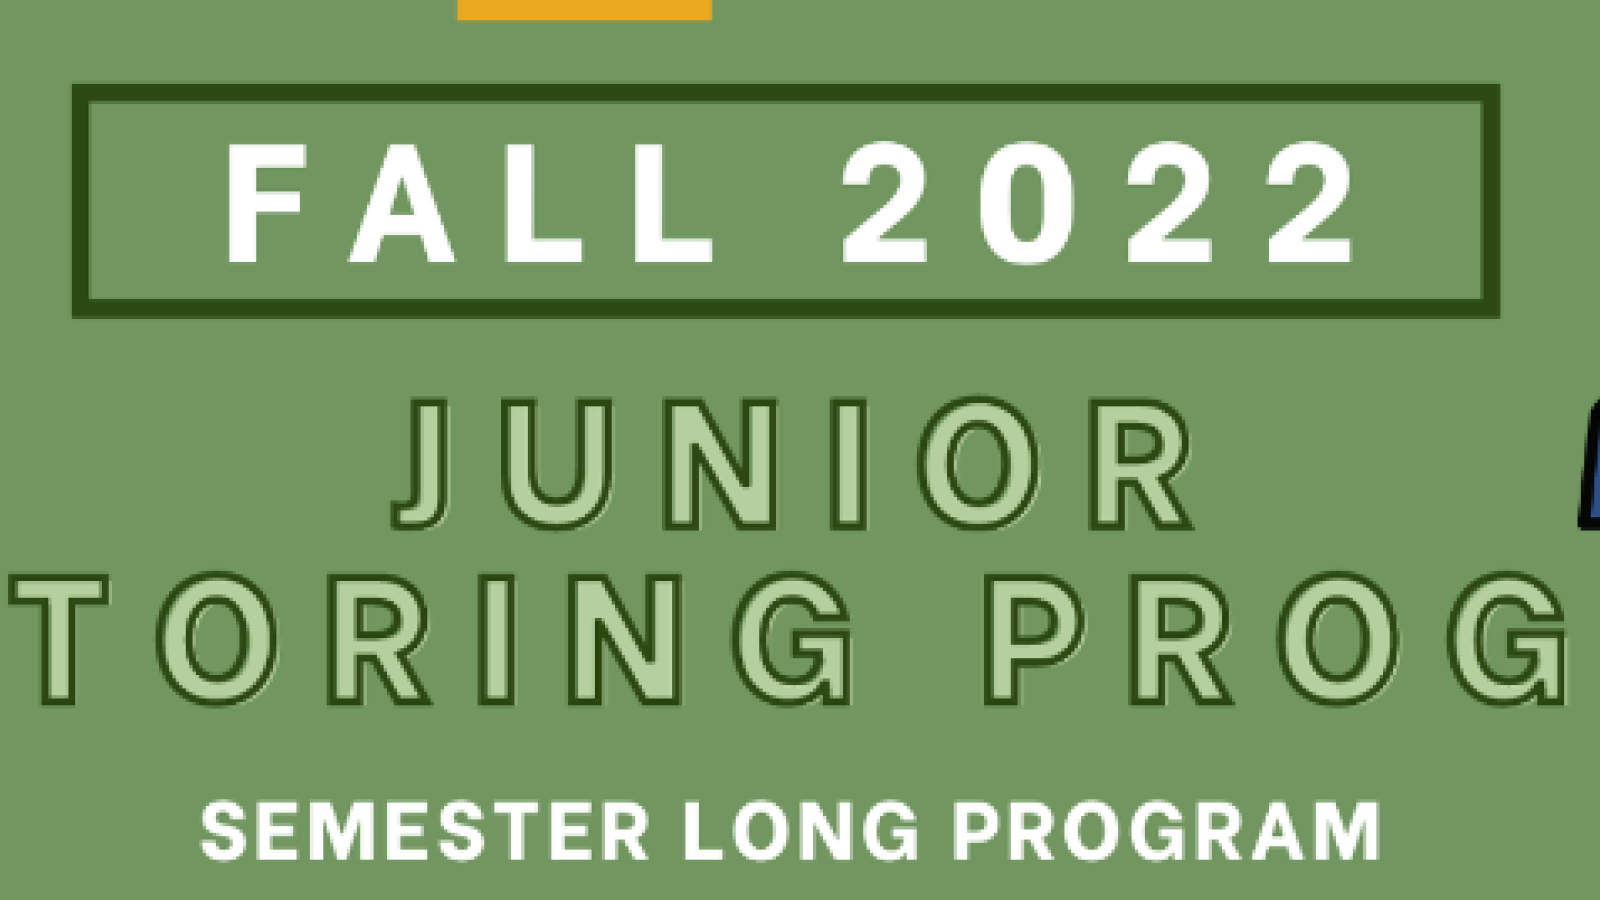 Fall 2022 Junior Mentoring Program Semester Long 